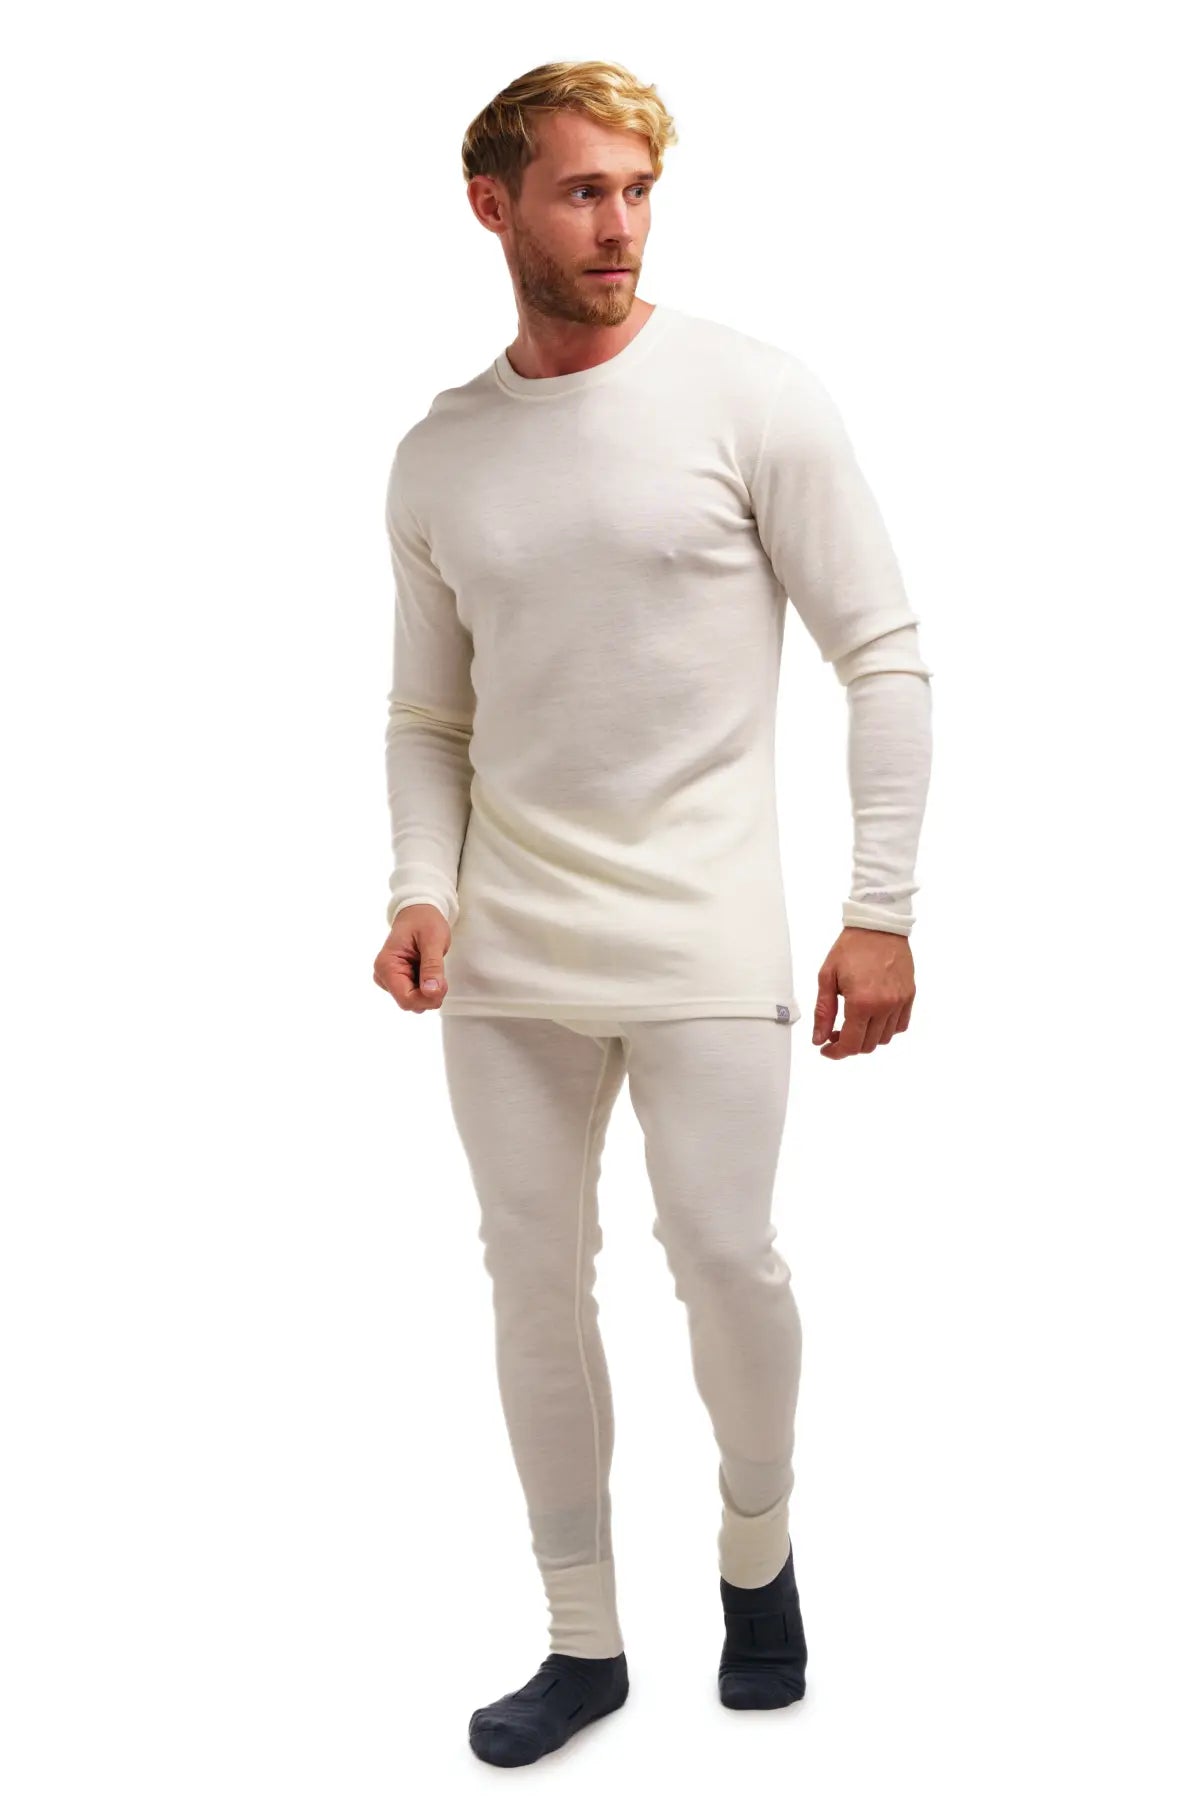 52025 Warm Thermal Underwear with Merino Wool Premium Design